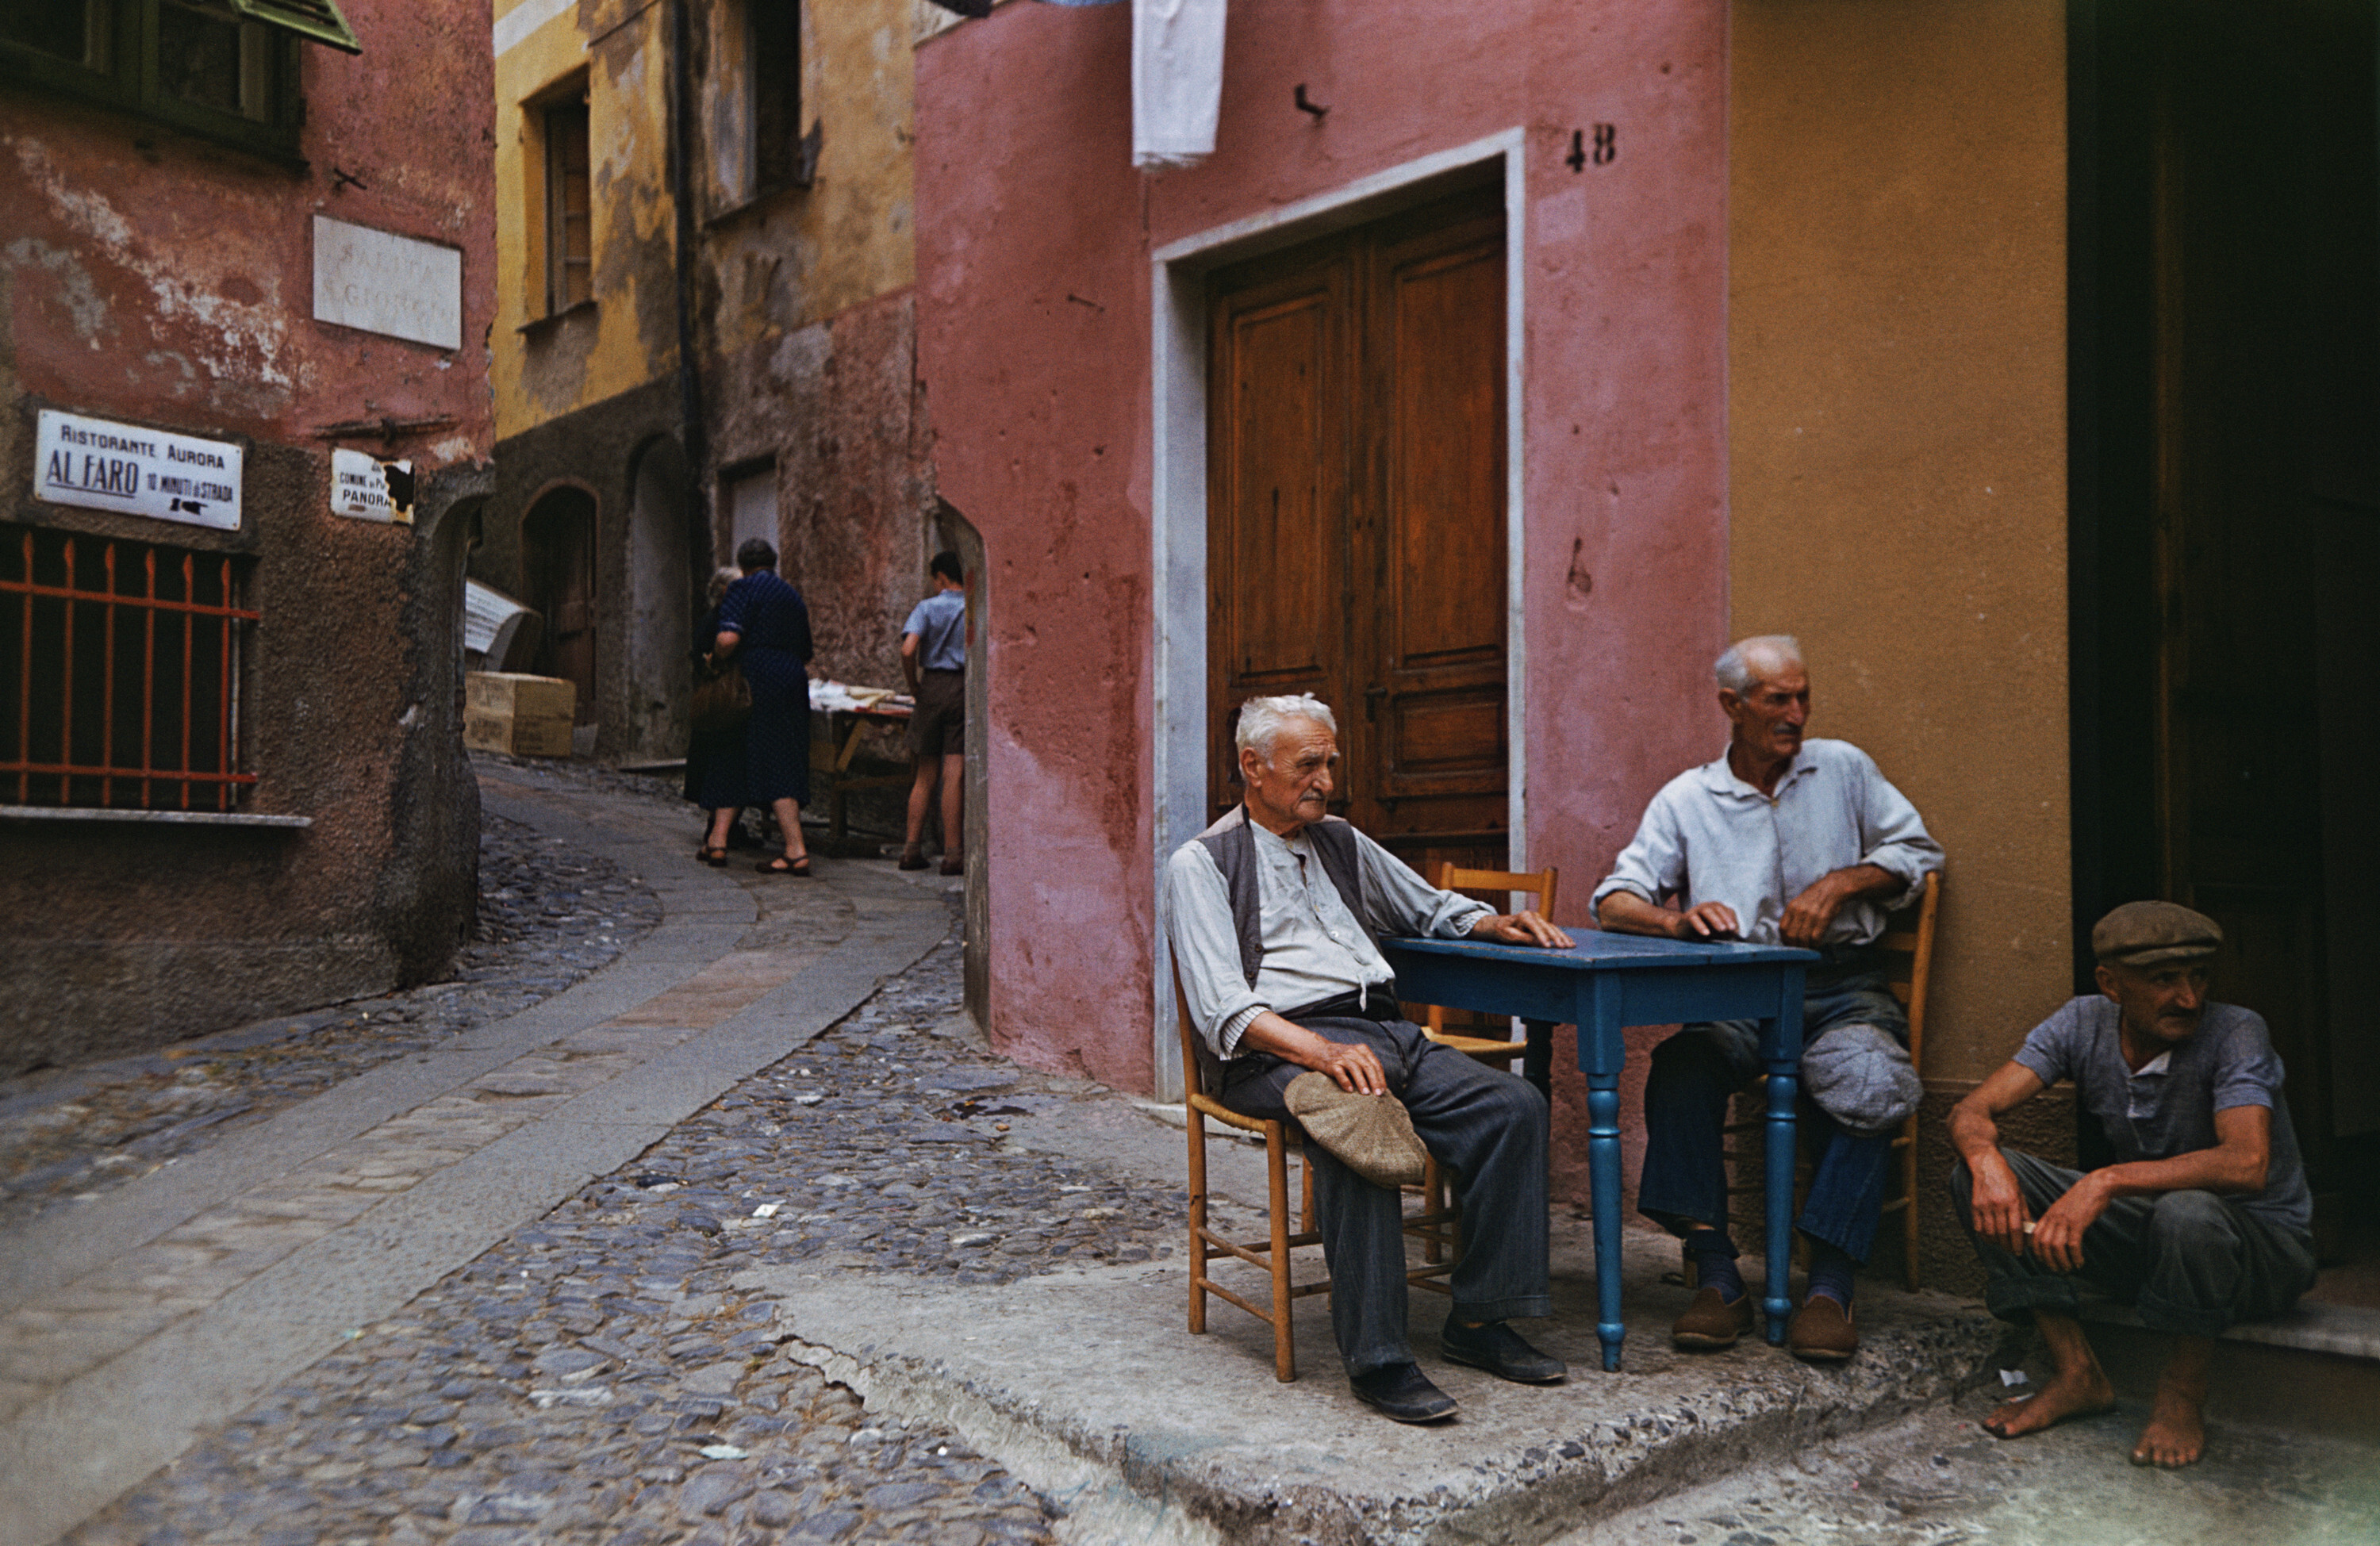 Кафе Портофино, ок. 1970 г. Фотограф Слим Ааронс